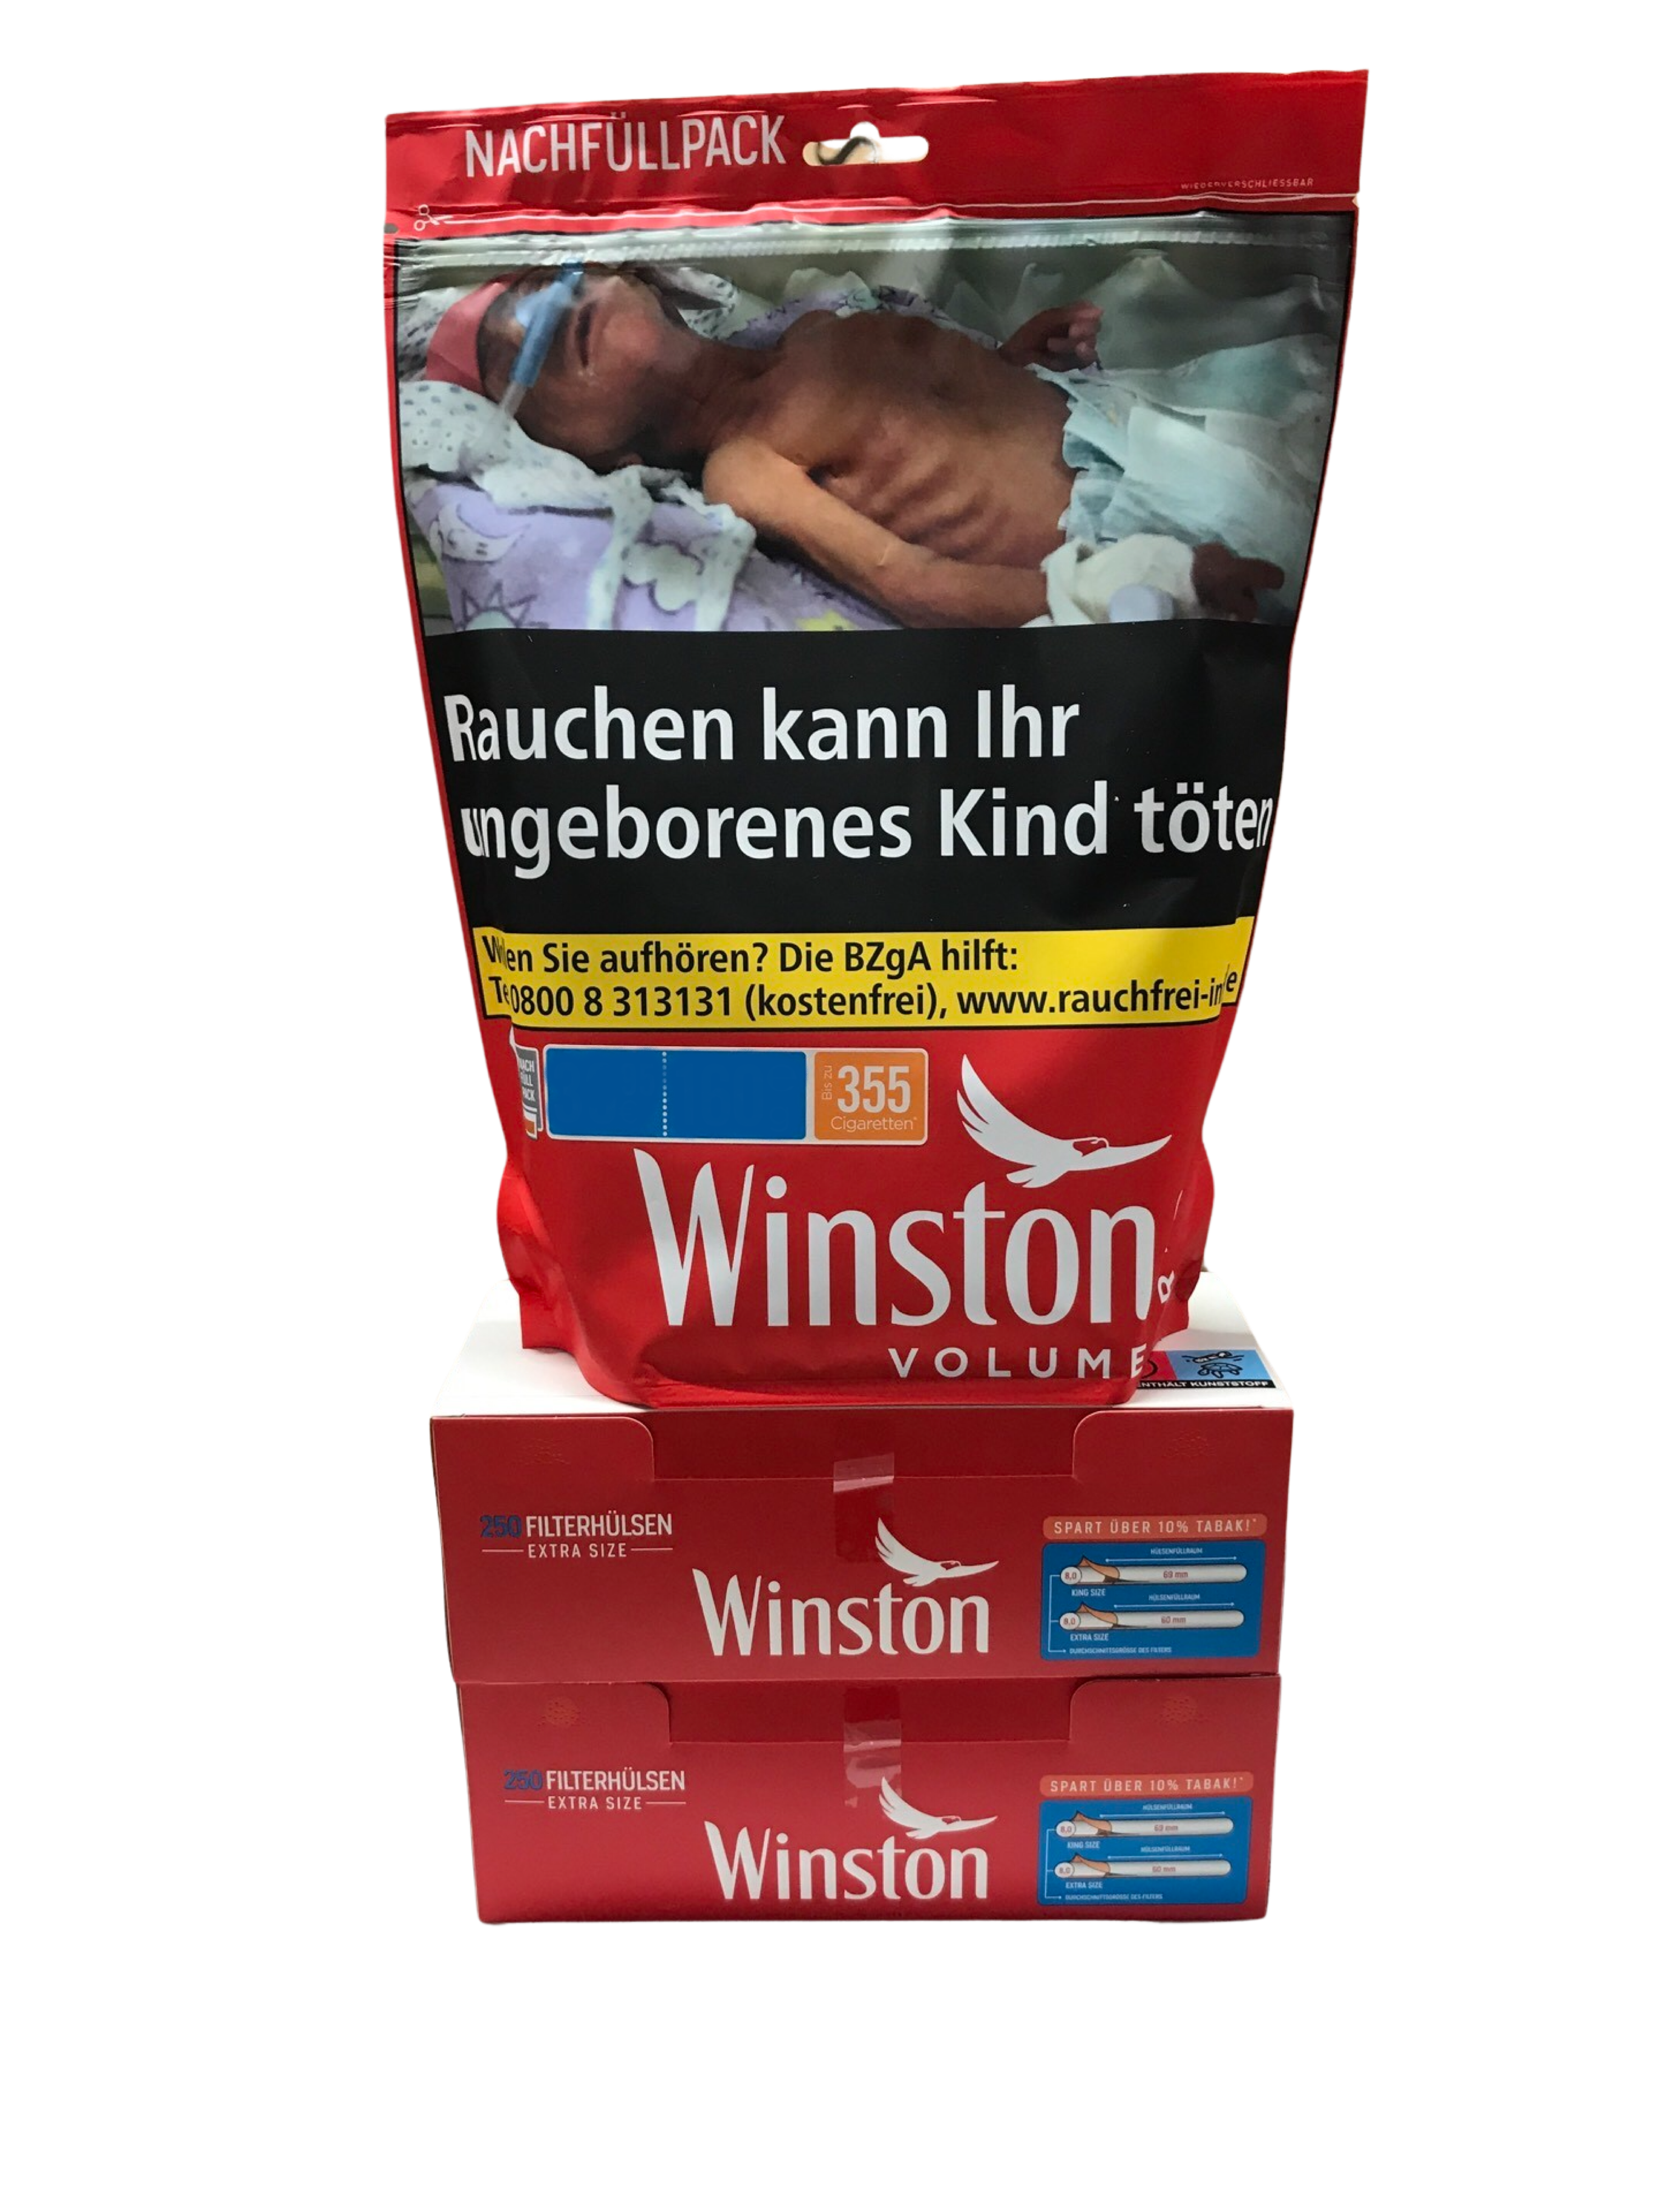 1x WINSTON Volumen Tobacco Red 155g + 500 Winston Hülsen